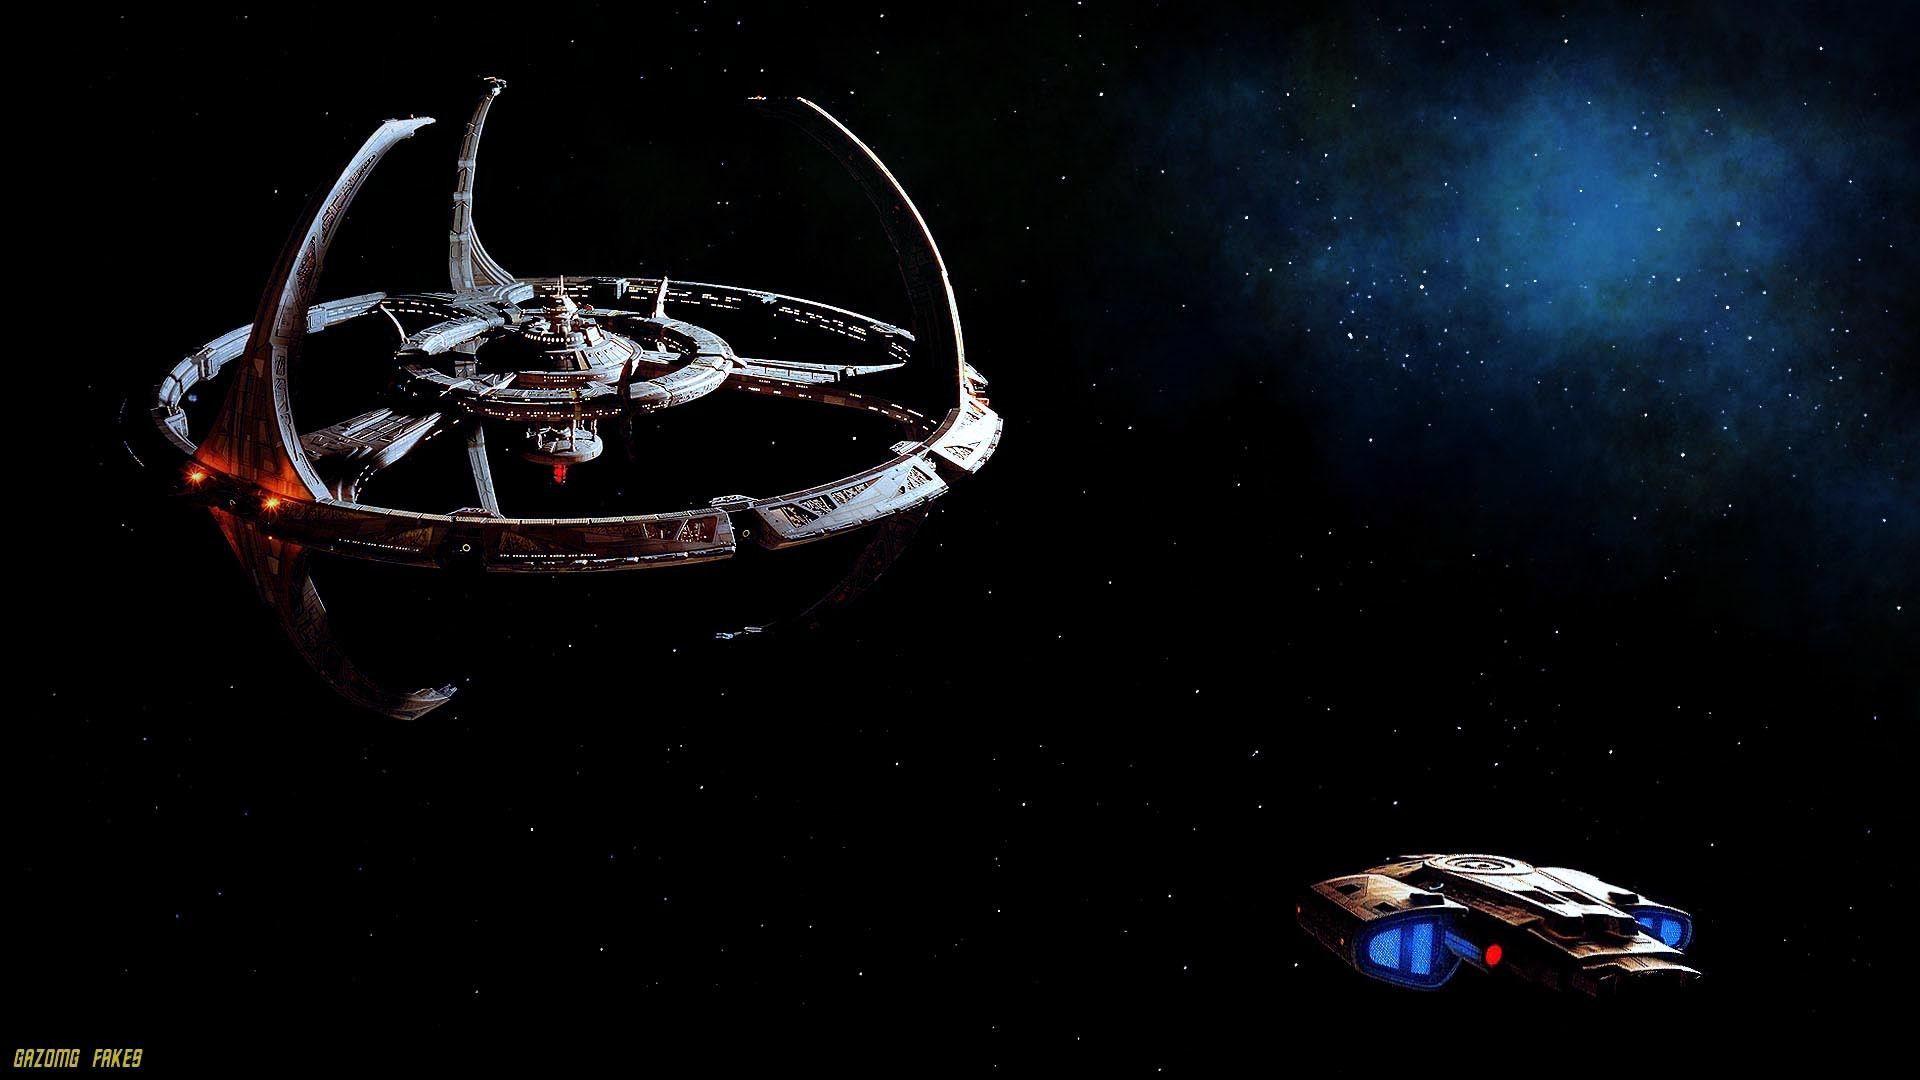 Hình nền Deep Space Nine miễn phí: Không phải ai cũng có thể tìm được hình nền Deep Space Nine đẹp, độc đáo và miễn phí. Nhưng bây giờ, bạn đã tìm thấy nó! Với hình nền chuẩn HD, bạn có thể đắm chìm vào thế giới Star Trek và cảm nhận mọi điều tuyệt vời nhất của nó. Tải ngay để trải nghiệm hình nền Deep Space Nine tuyệt vời này. 